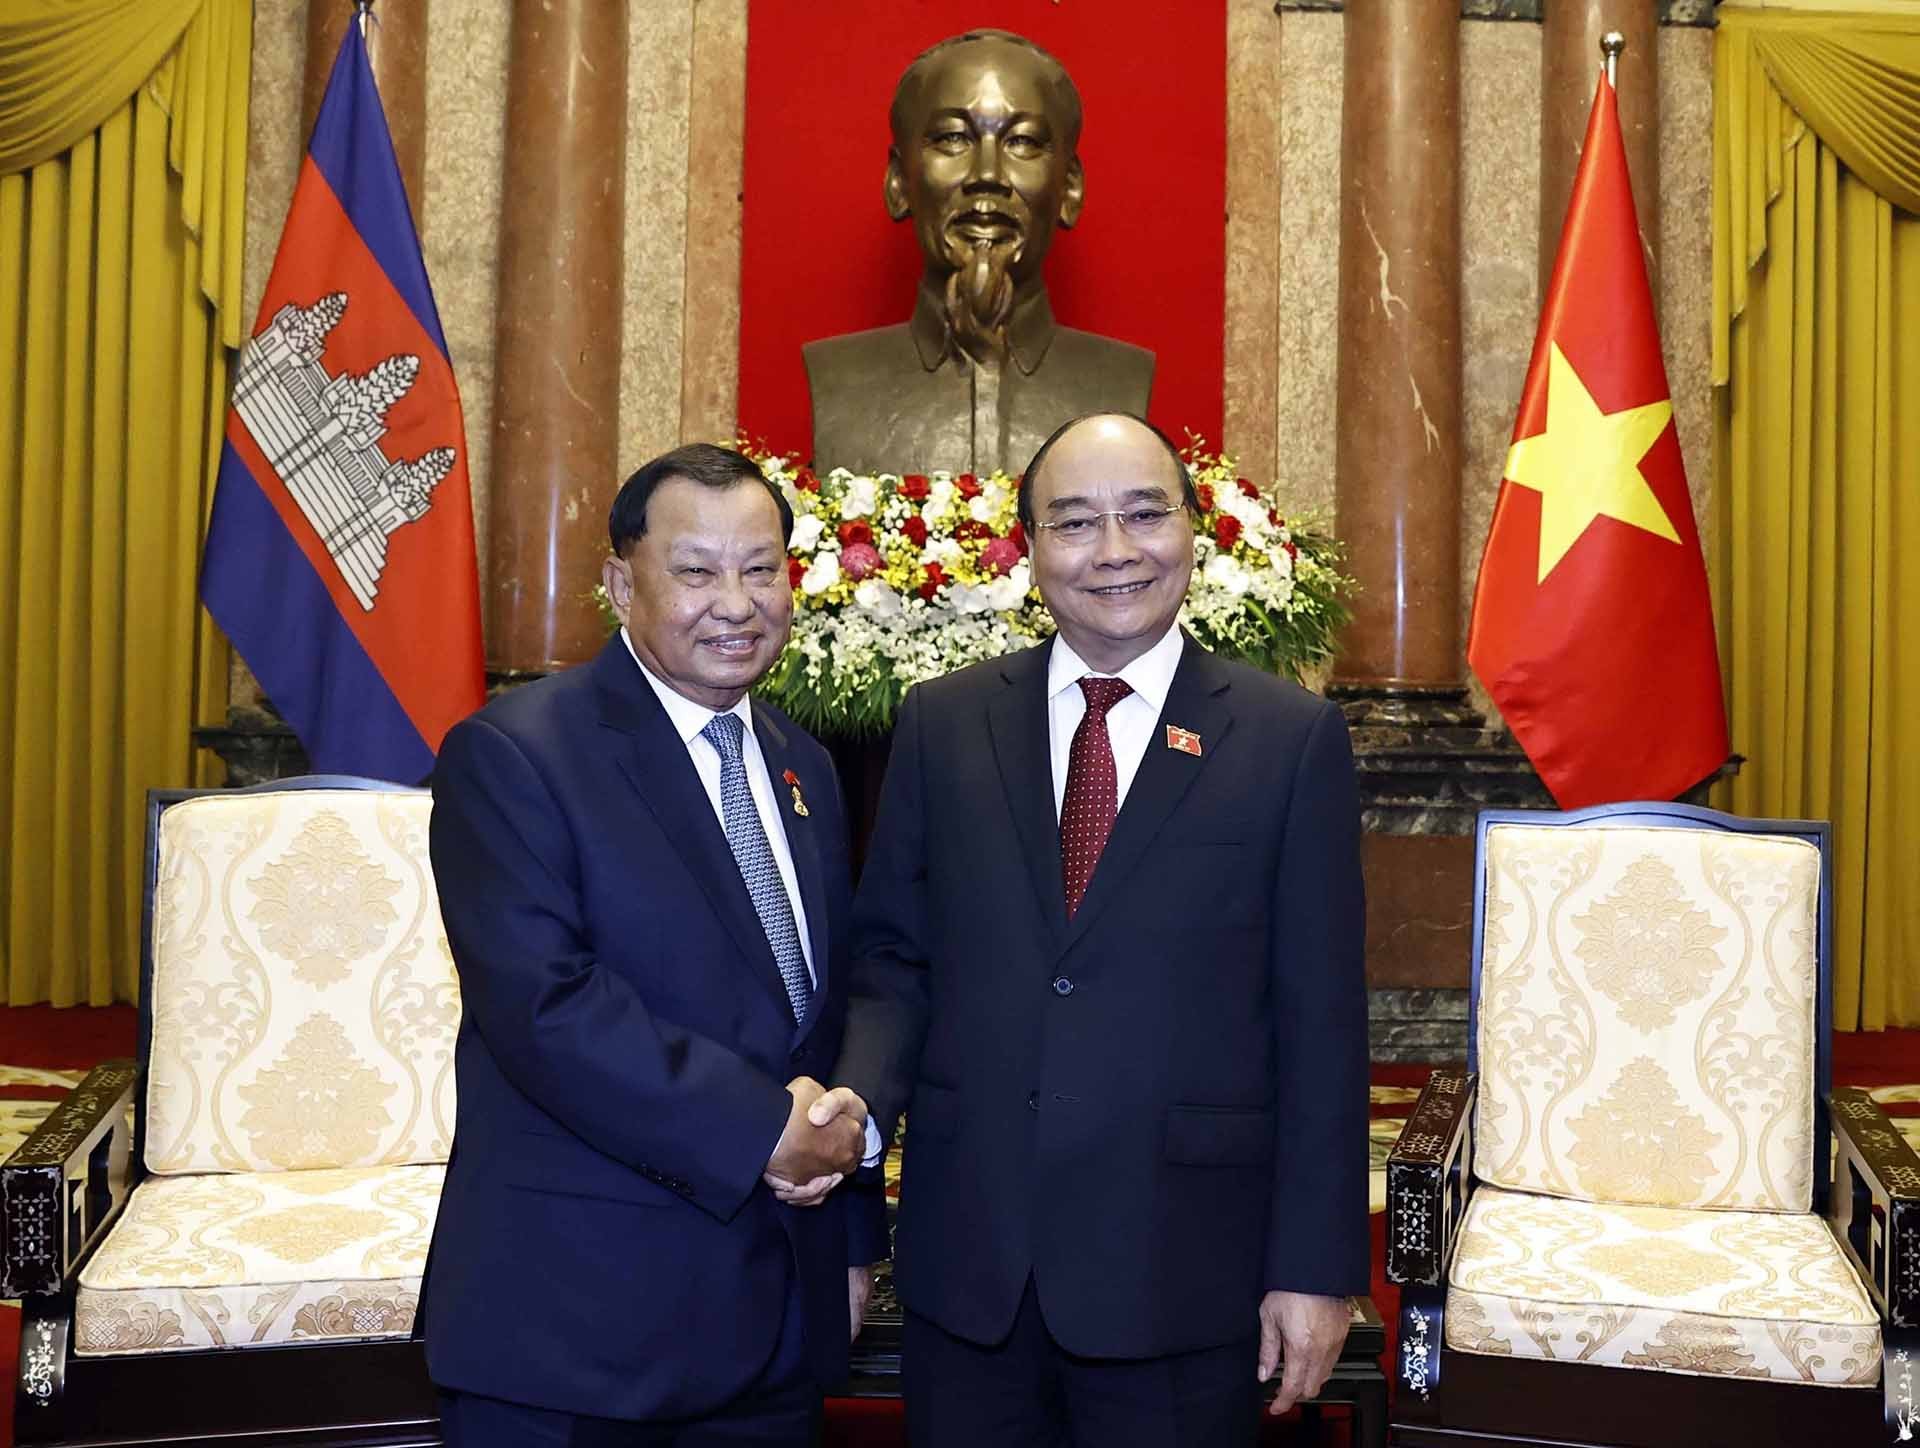 Chủ tịch nước Campuchia là người đại diện cho quyền lực và chính quyền của đất nước láng giềng. Cùng ngắm nhìn hình ảnh của Chủ tịch nước Campuchia và tìm hiểu thêm về chính trị và xã hội của đất nước này dưới sự lãnh đạo của ông.